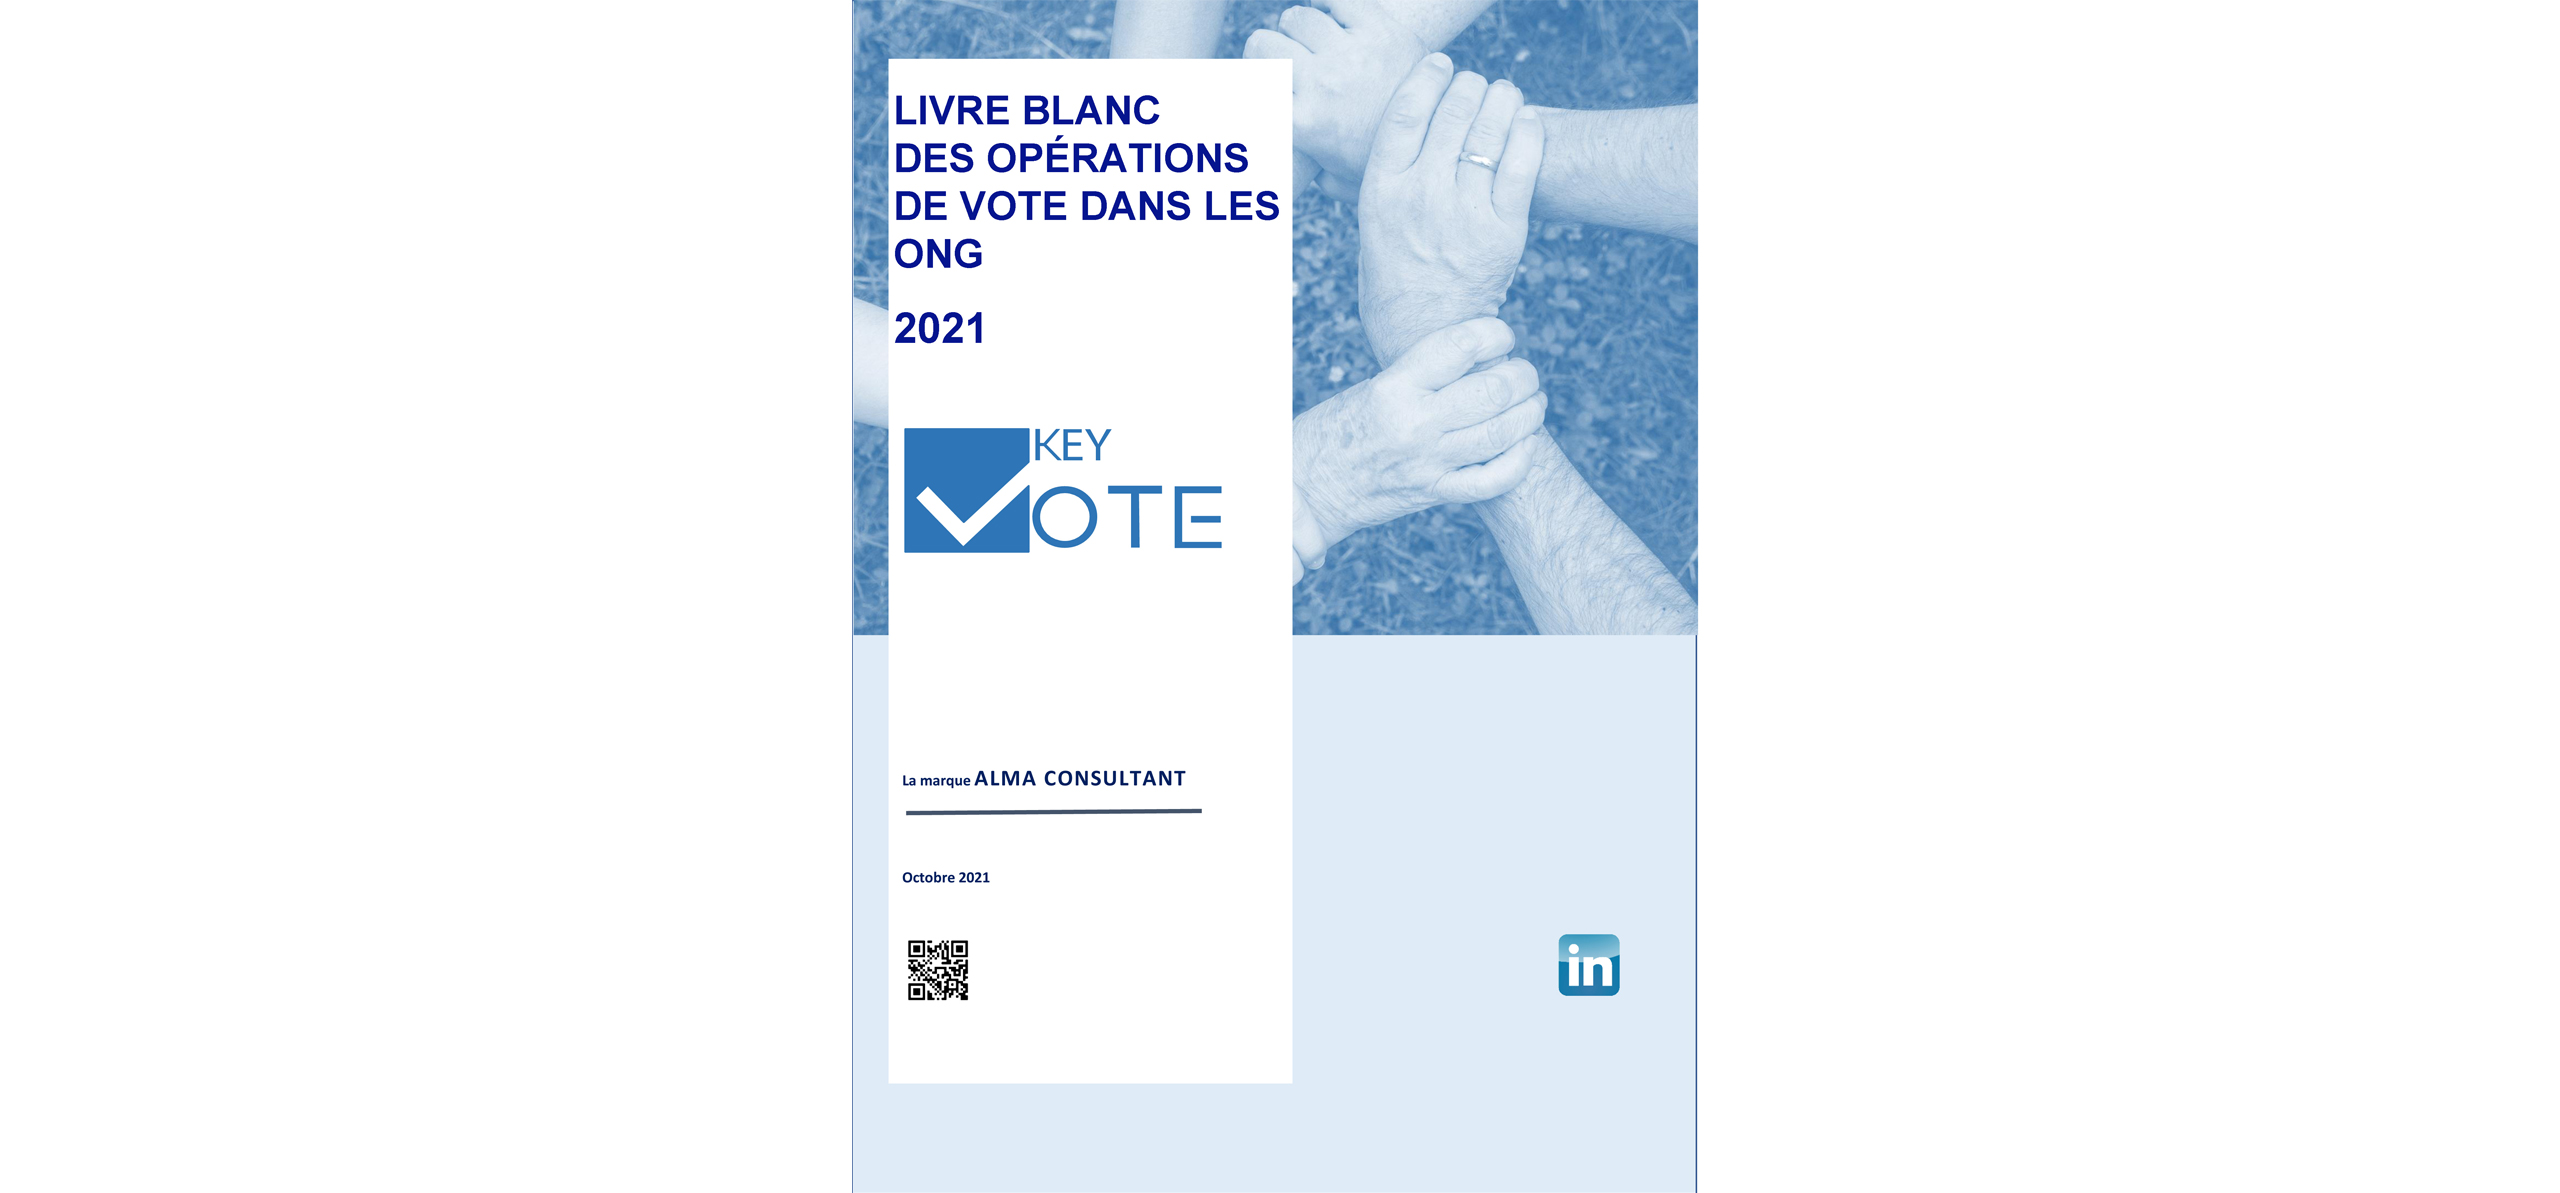 You are currently viewing Livre blanc des opérations de vote dans les ONG